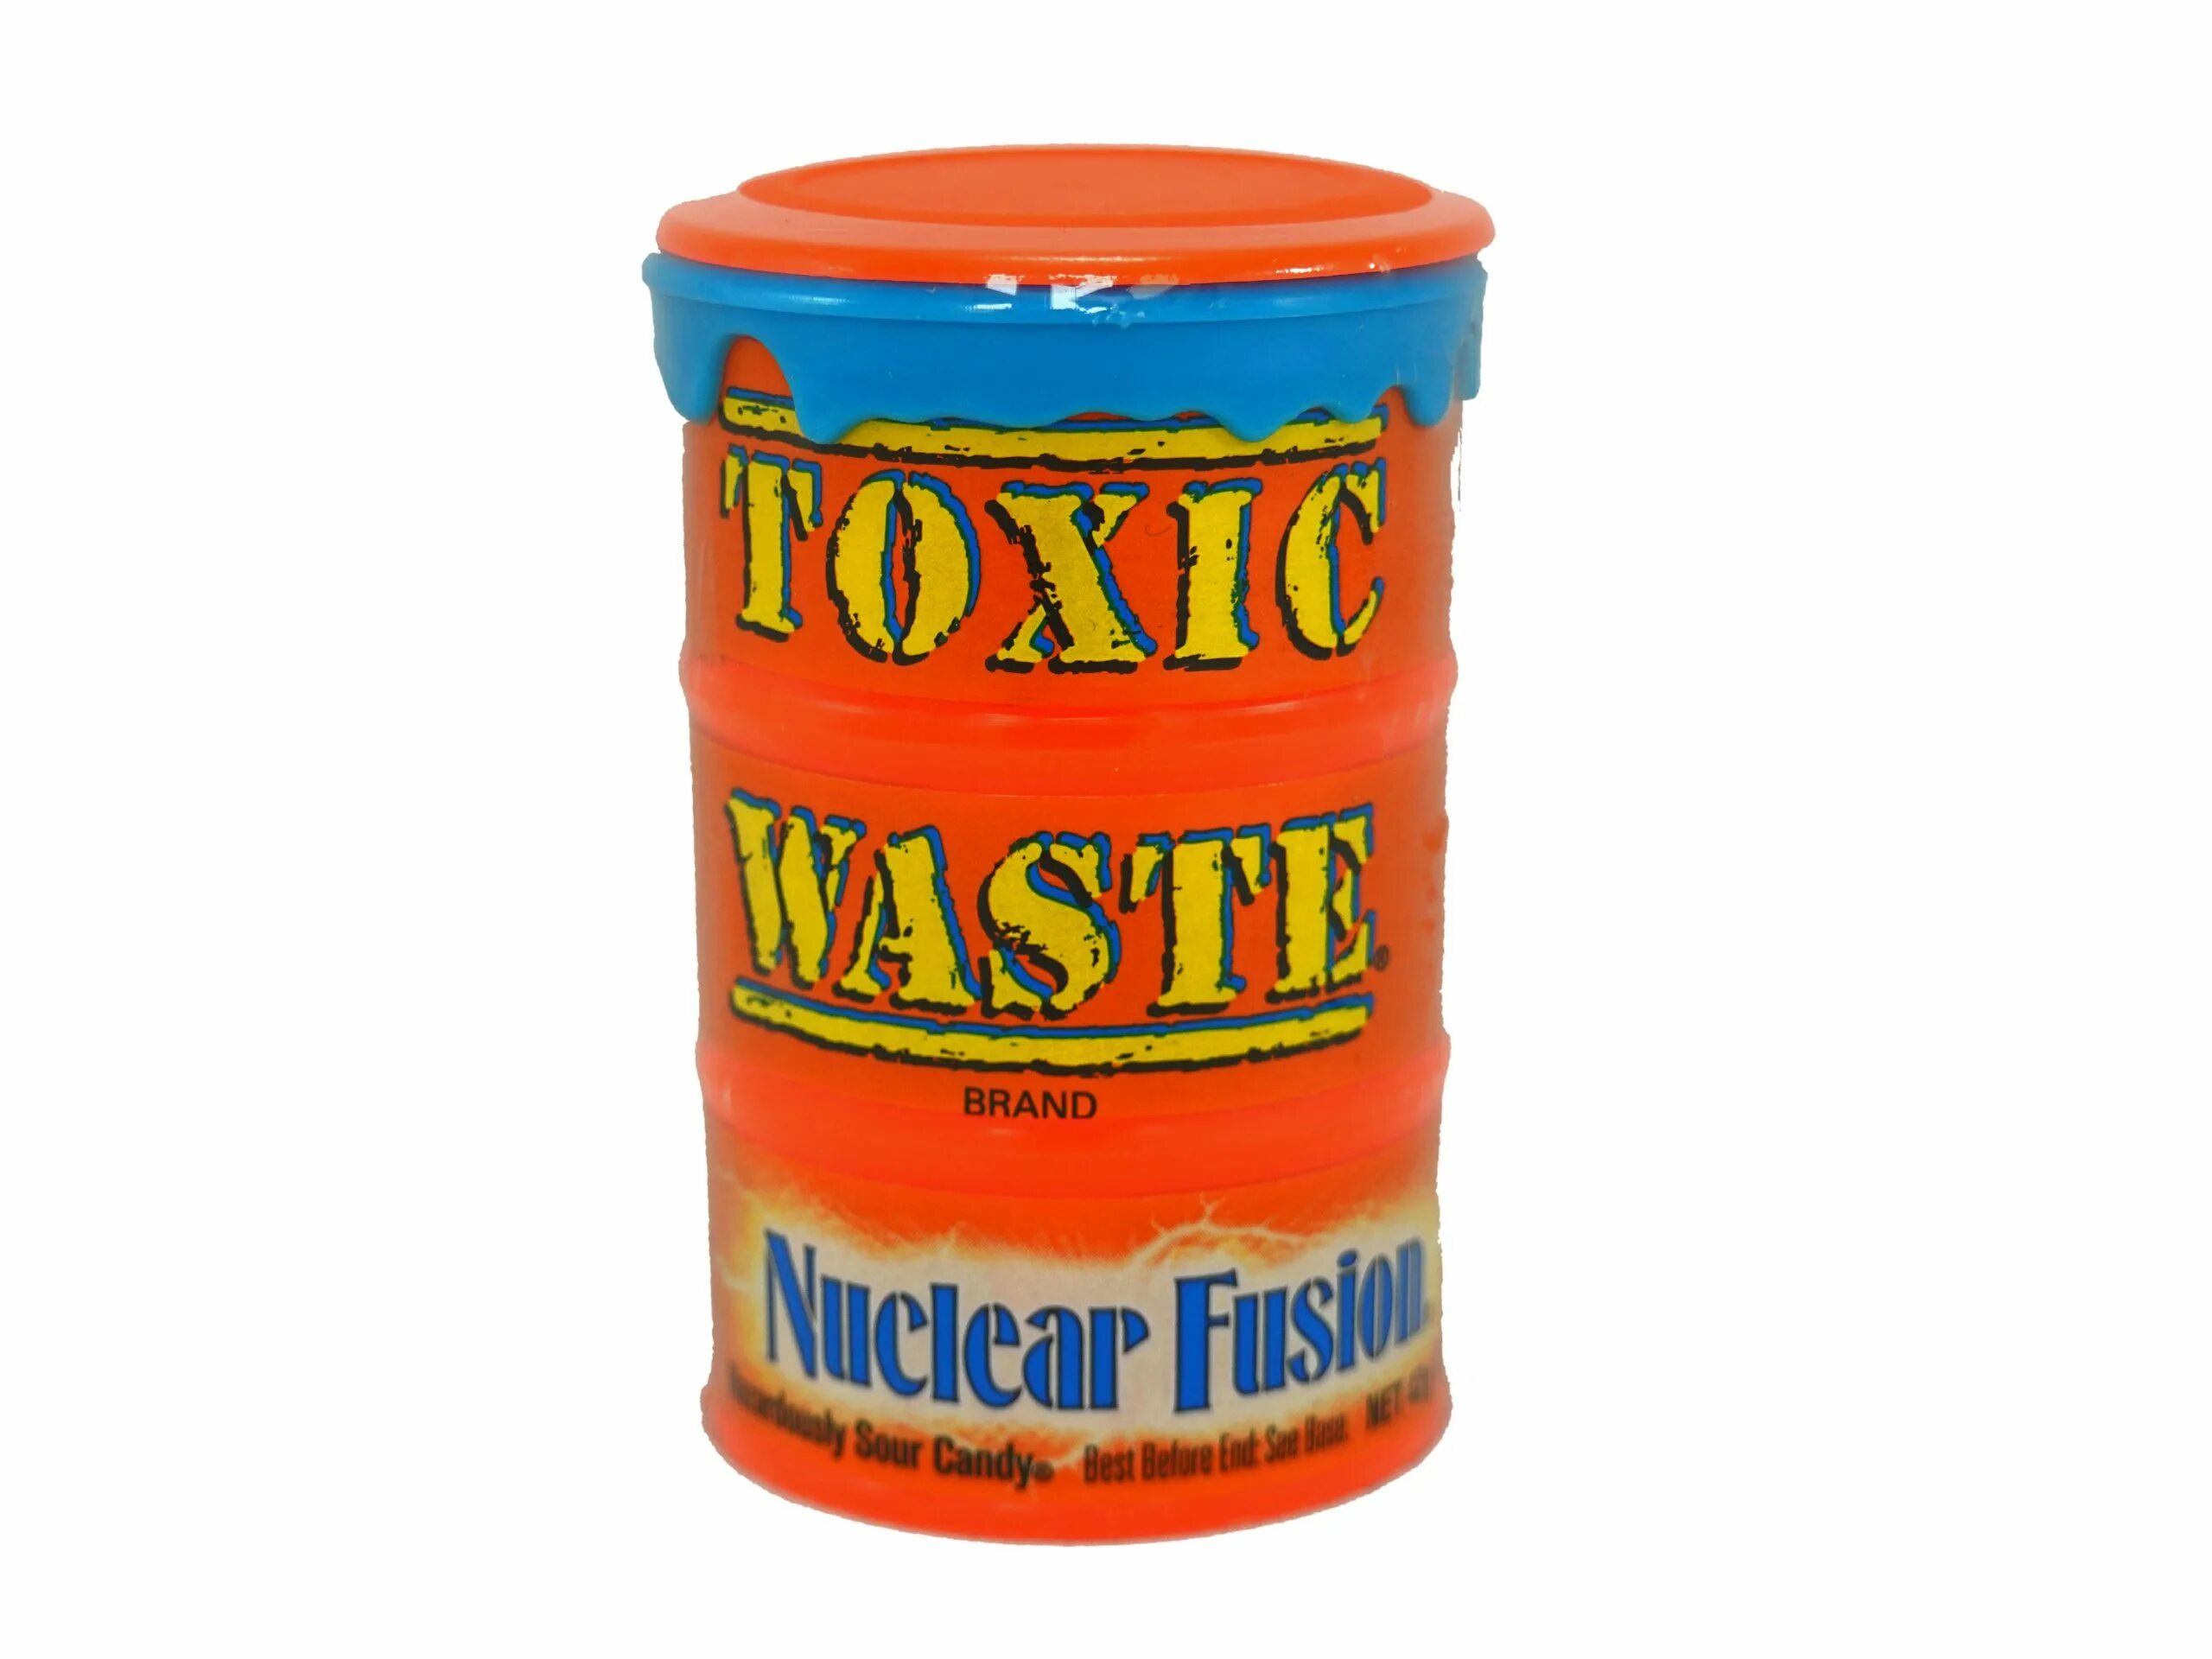 Toxic waste (Candy). Toxic waste nuclear Fusion. Конфеты Токсик Вейст. Токсик вейст